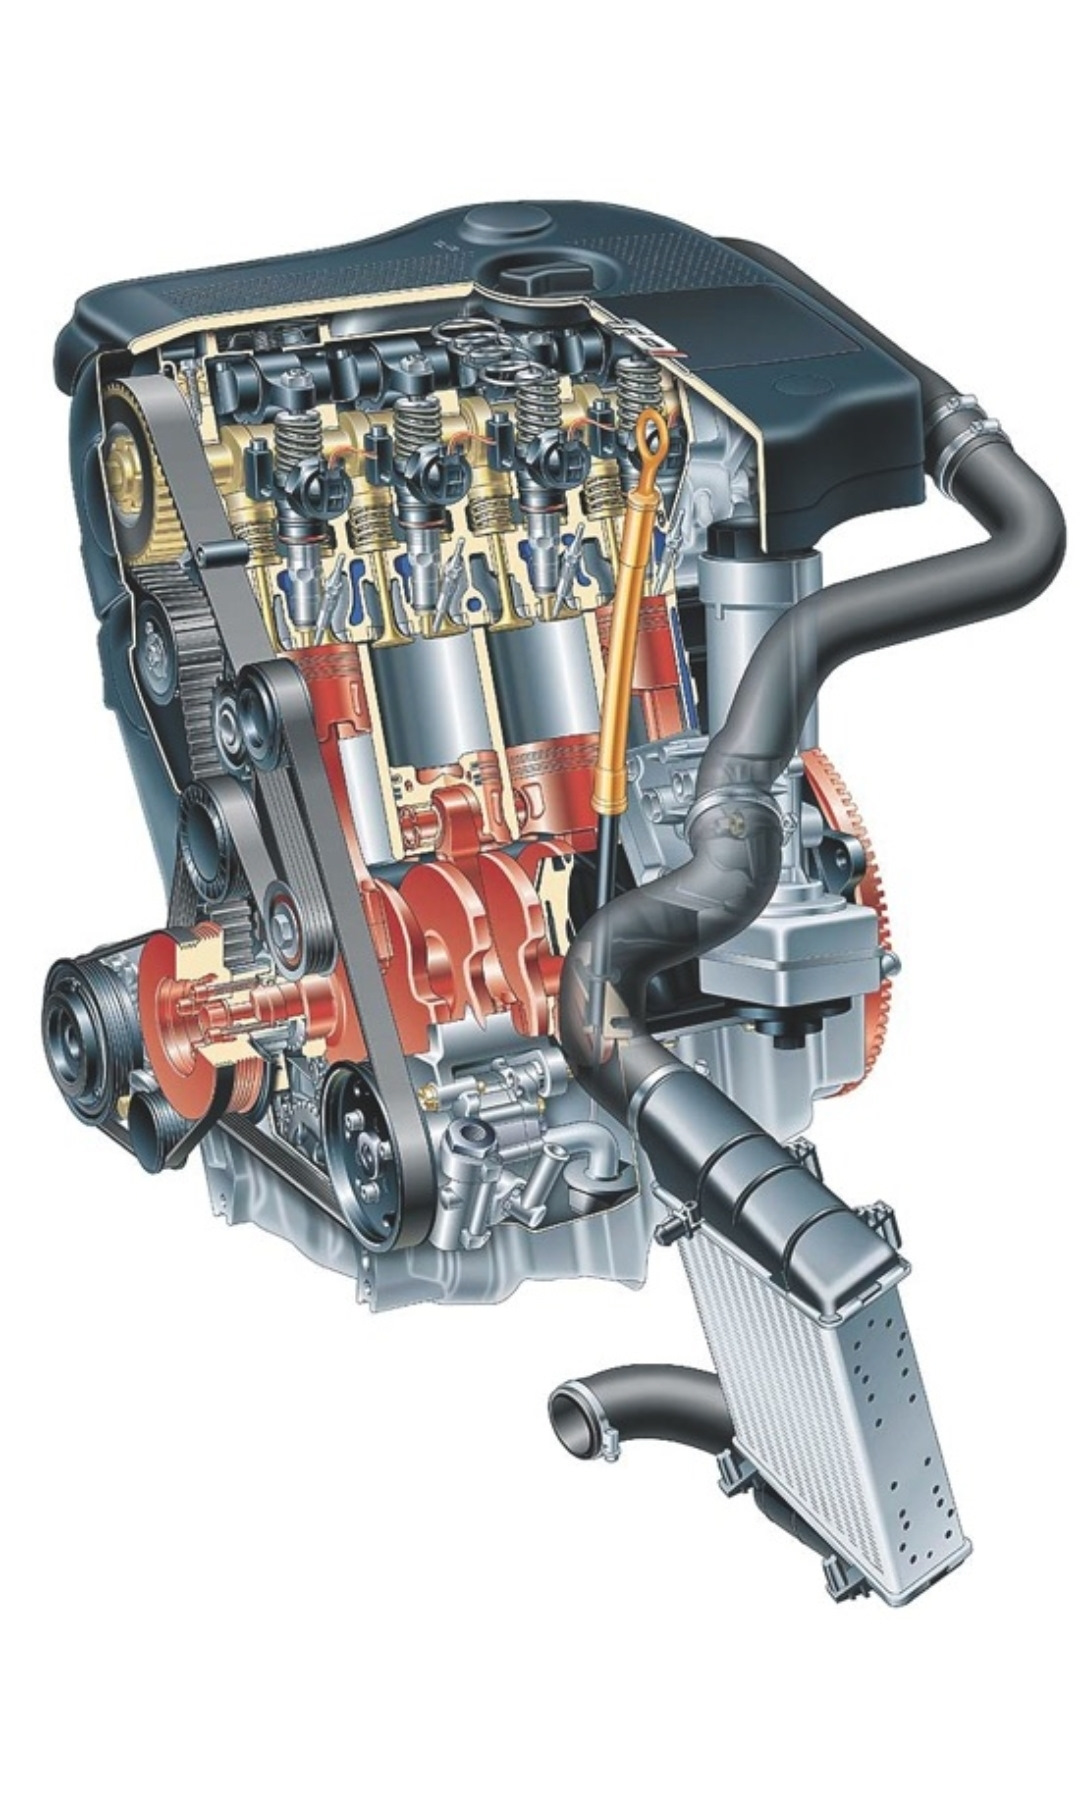 Дизель фольксваген 2.5 л. Мотор 1.9 тди. Двигатель Фольксваген 2.0 дизель. Двигатель 1 9 TDI Фольксваген. Audi a8 4.1 TDI двигатель.